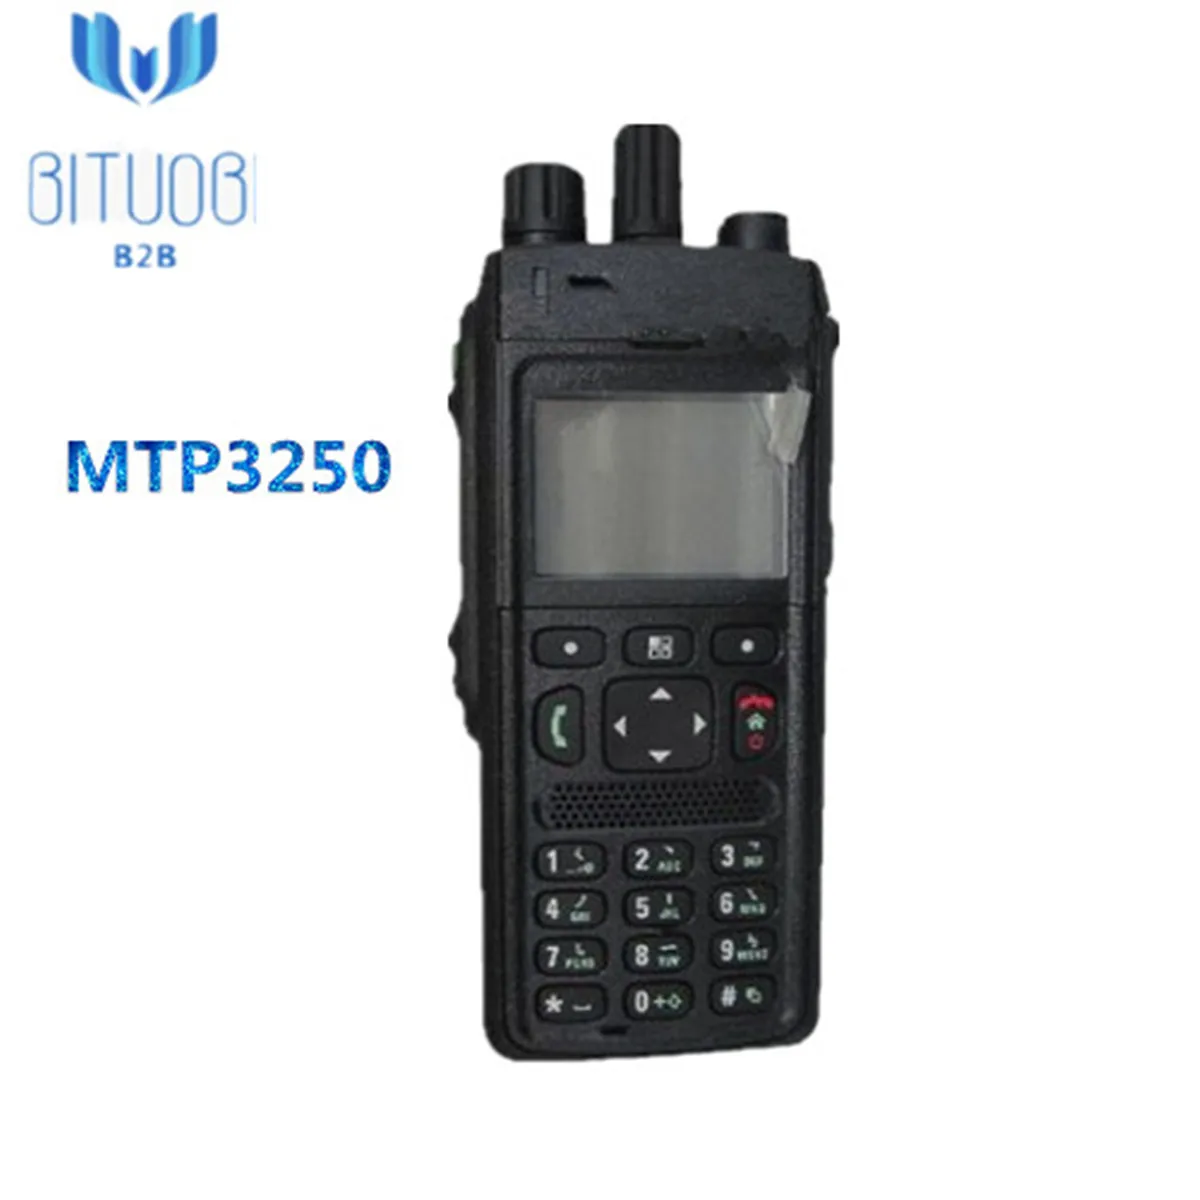 MTP3250 Tetra радио 350-430 МГц 806-870 МГц рация с gps Bluetooth цветной дисплей IP65